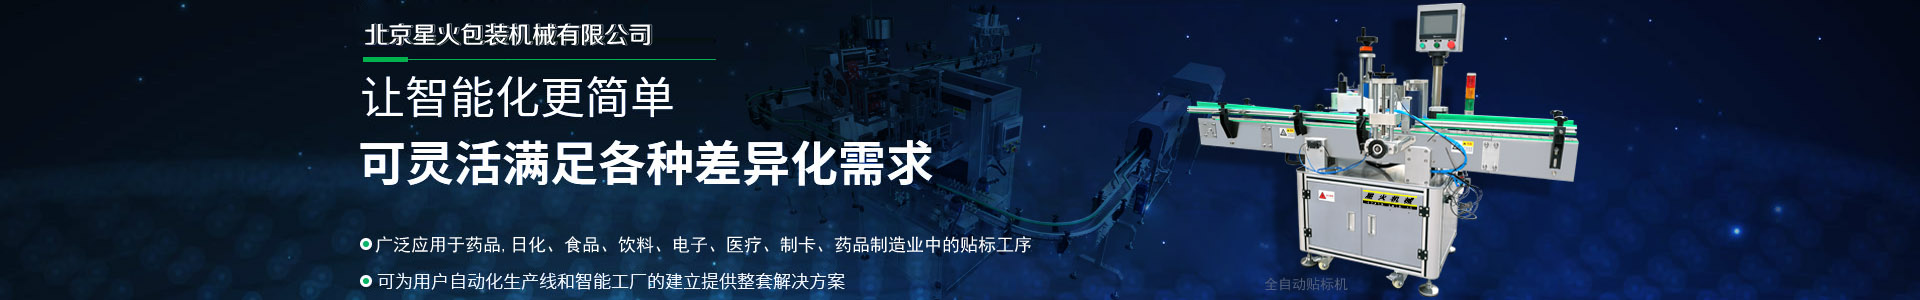 北京星火自动化设备有限公司